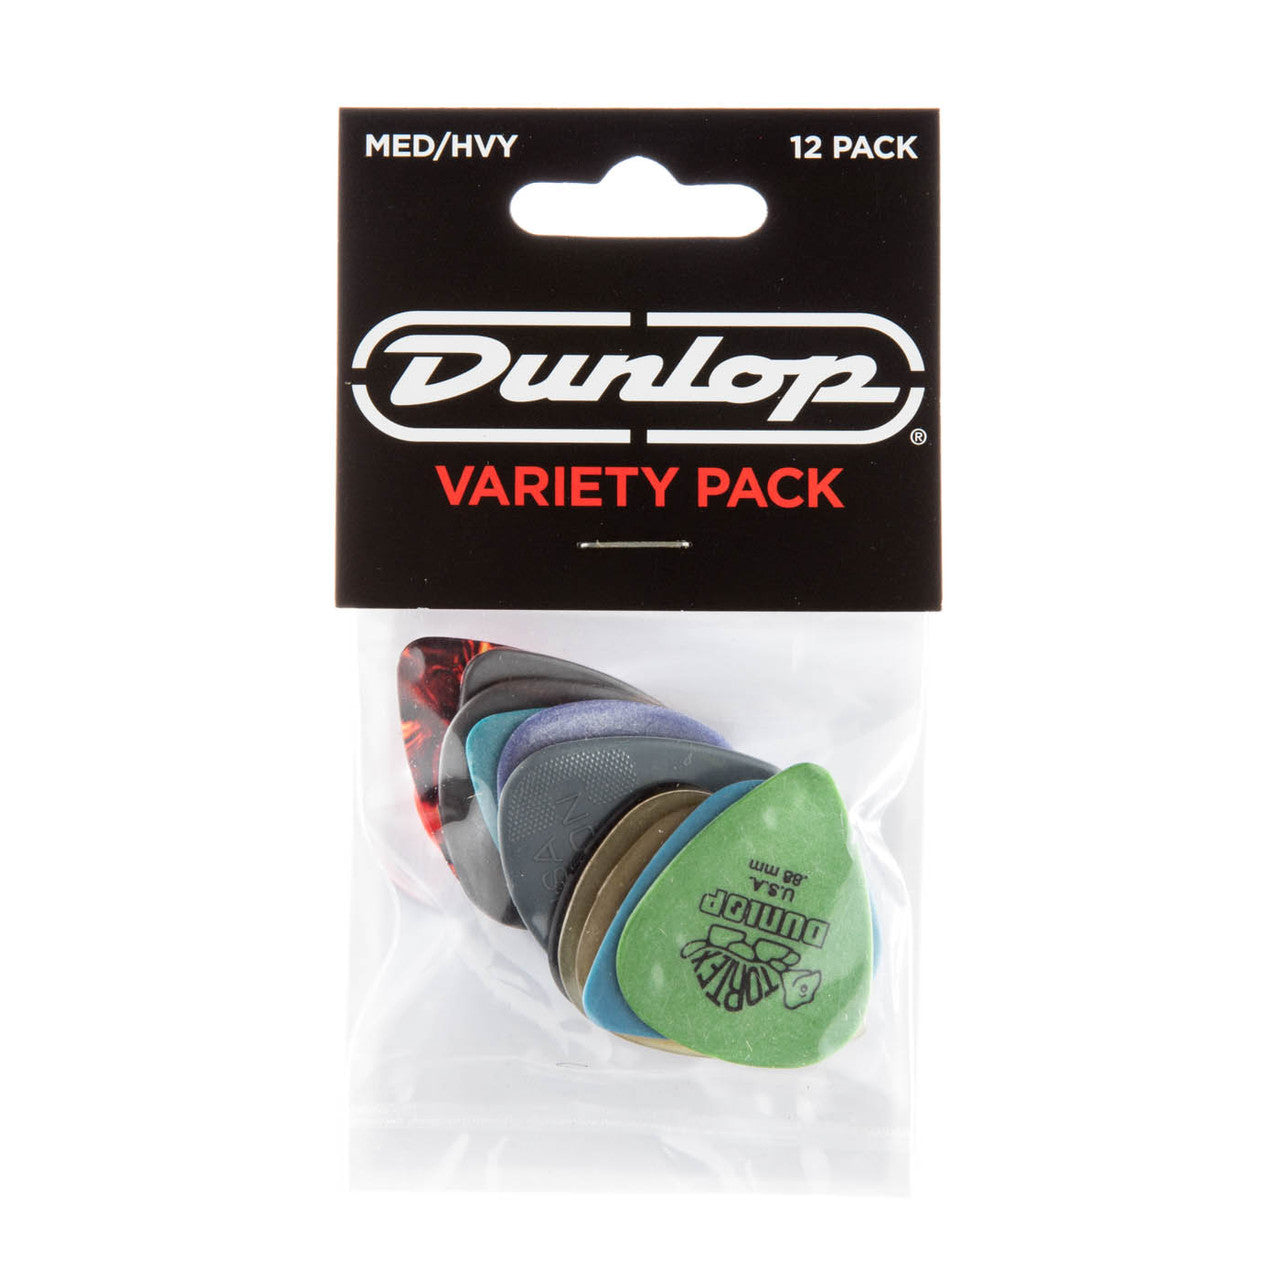 Dunlop Variety 12-Pack - Medium/Heavy